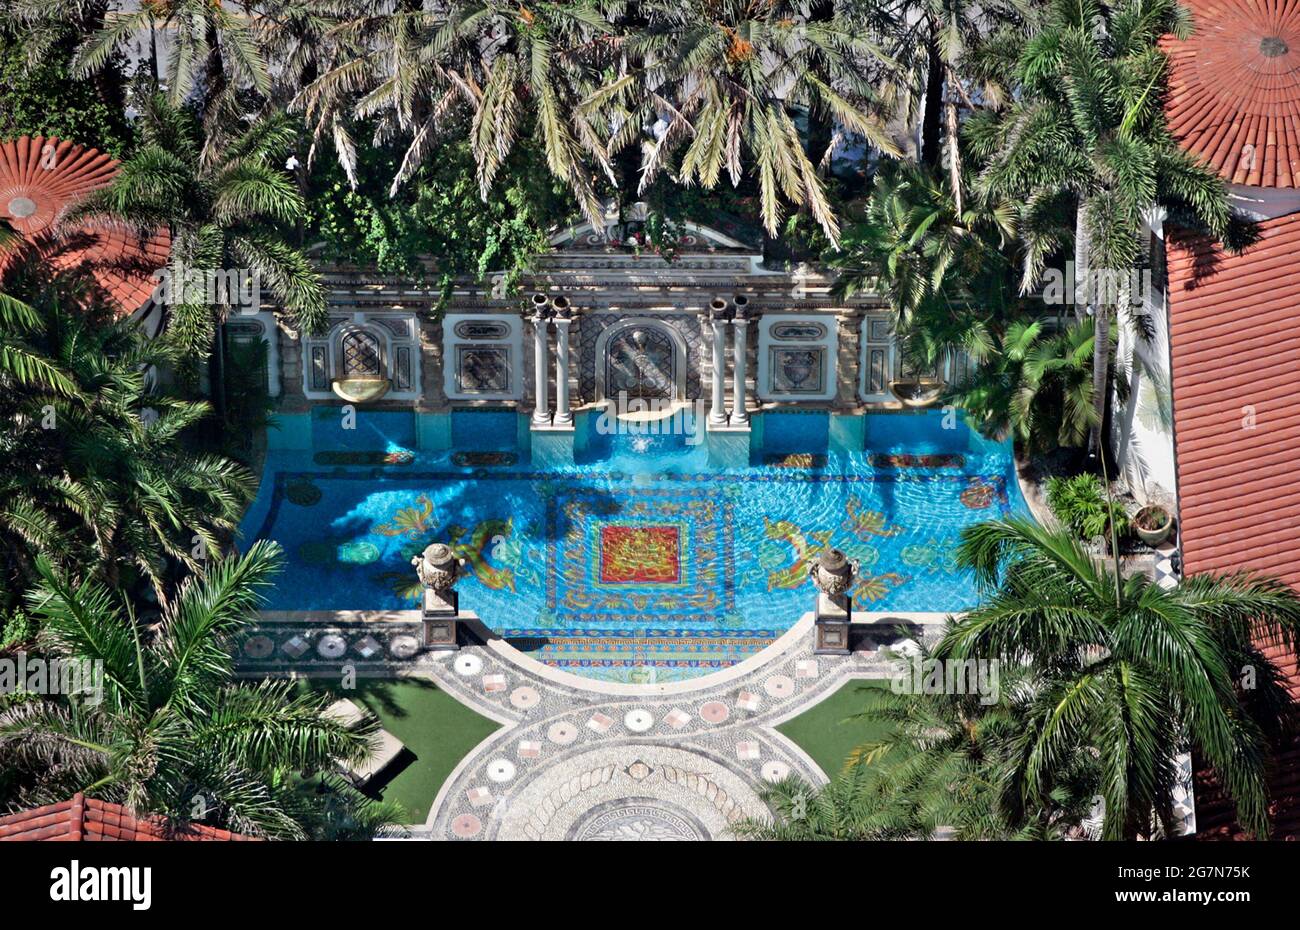 Miami Beach, Estados Unidos. 29th de junio de 2007. En esta fotografía se puede ver una vista aérea de la antigua mansión Gianni Versace, ahora conocida como Casa Casuarina. Este es el 10th aniversario de la muerte de Gianni Versace. (Foto de Al Diaz/Miami Herald/MCT/Sipa USA) Crédito: SIPA USA/Alamy Live News Foto de stock